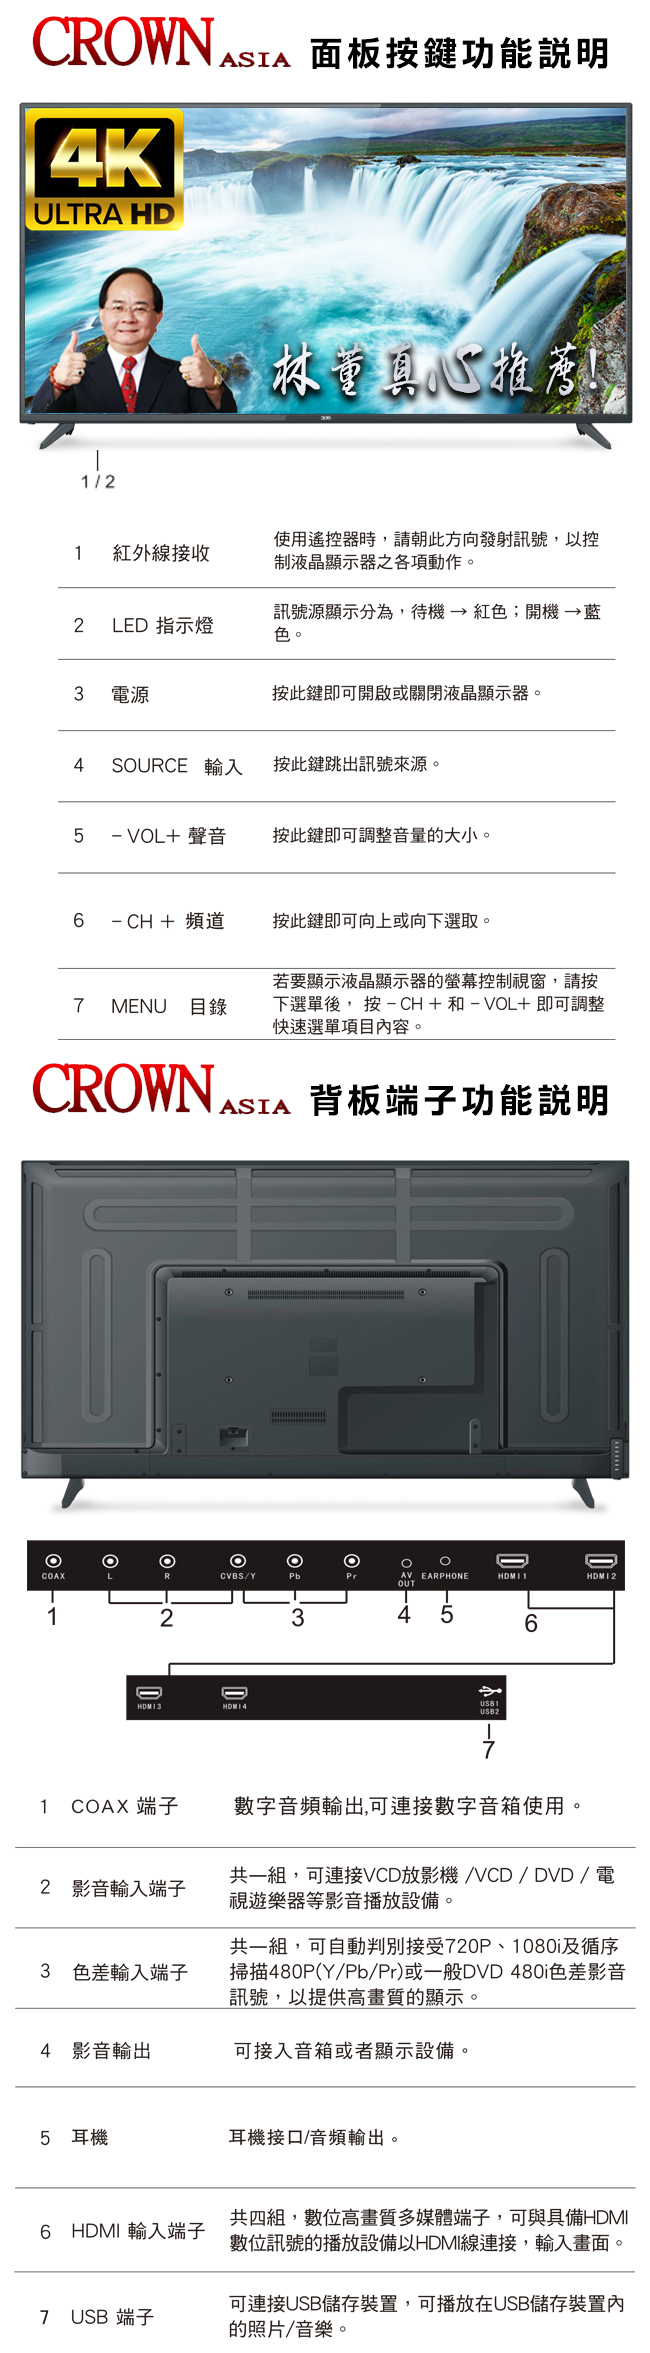 皇冠CROWN 55型4K UHD多媒體液晶顯示器+數位視訊盒(CR-55W02K)